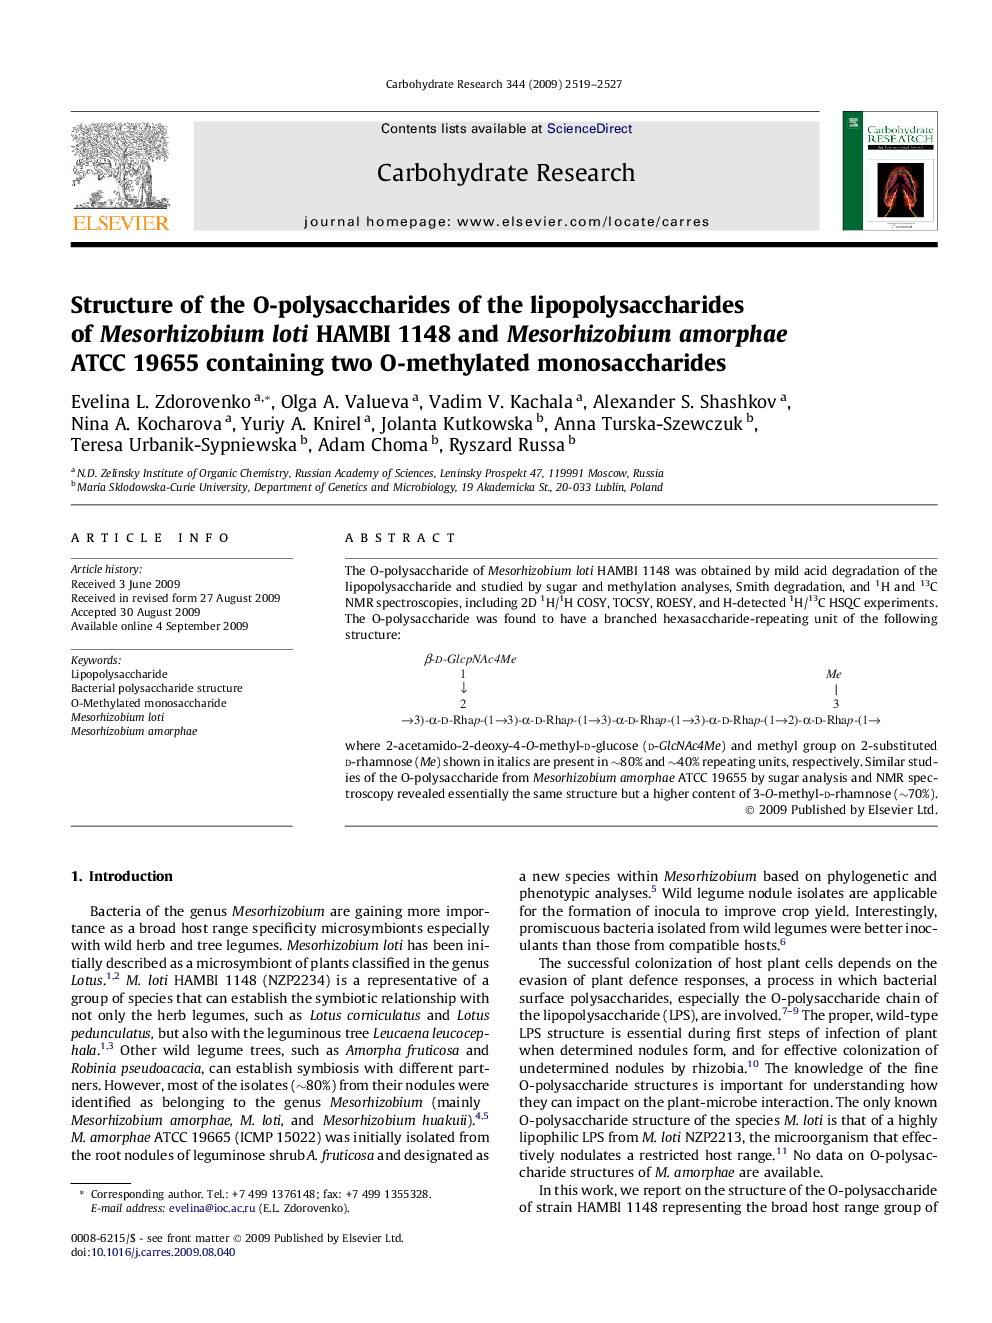 Structure of the O-polysaccharides of the lipopolysaccharides of Mesorhizobium loti HAMBI 1148 and Mesorhizobium amorphae ATCC 19655 containing two O-methylated monosaccharides